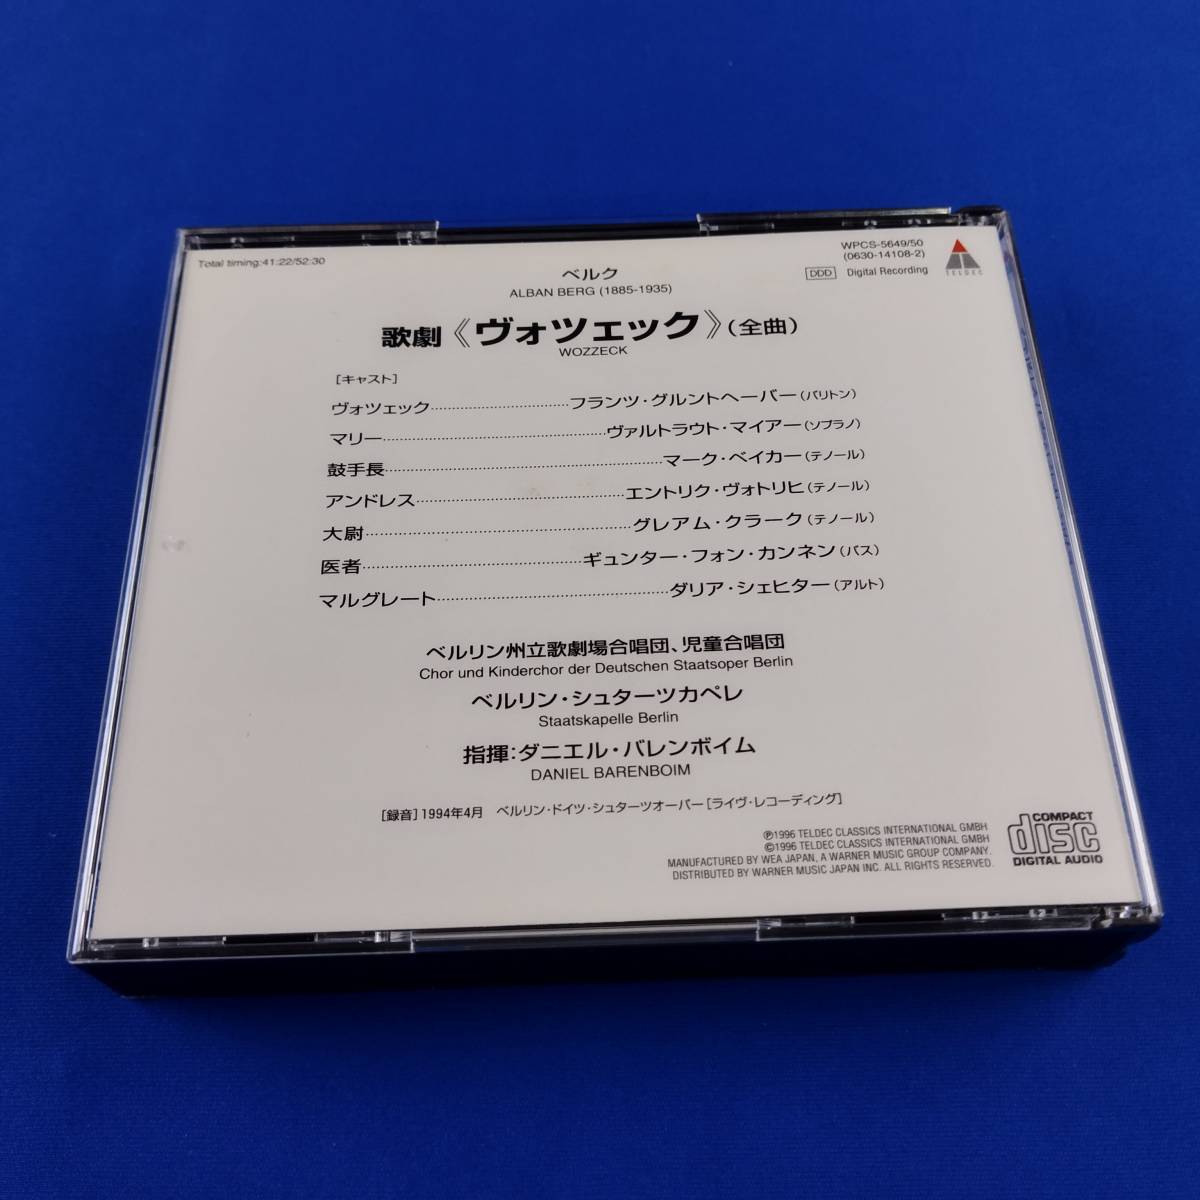 2SC11 CD ダニエル・バレンボイム ベルリン・シュターツカペレ ボツェック 歌劇_画像2